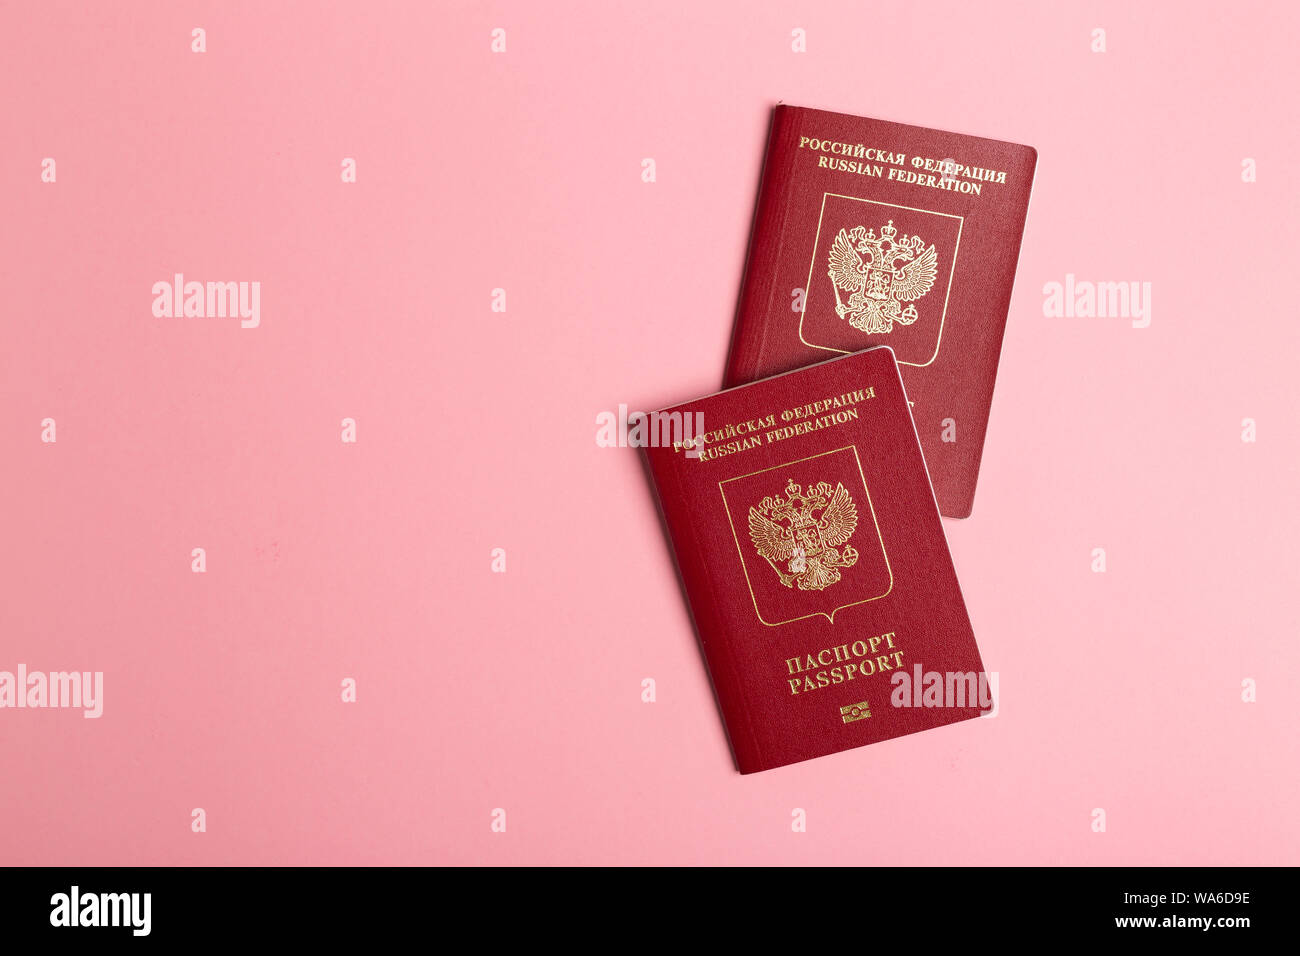 Zwei russische Pässe auf rosa Hintergrund. Reisen oder Migration Konzept. Ansicht von oben mit Kopie spce Stockfoto